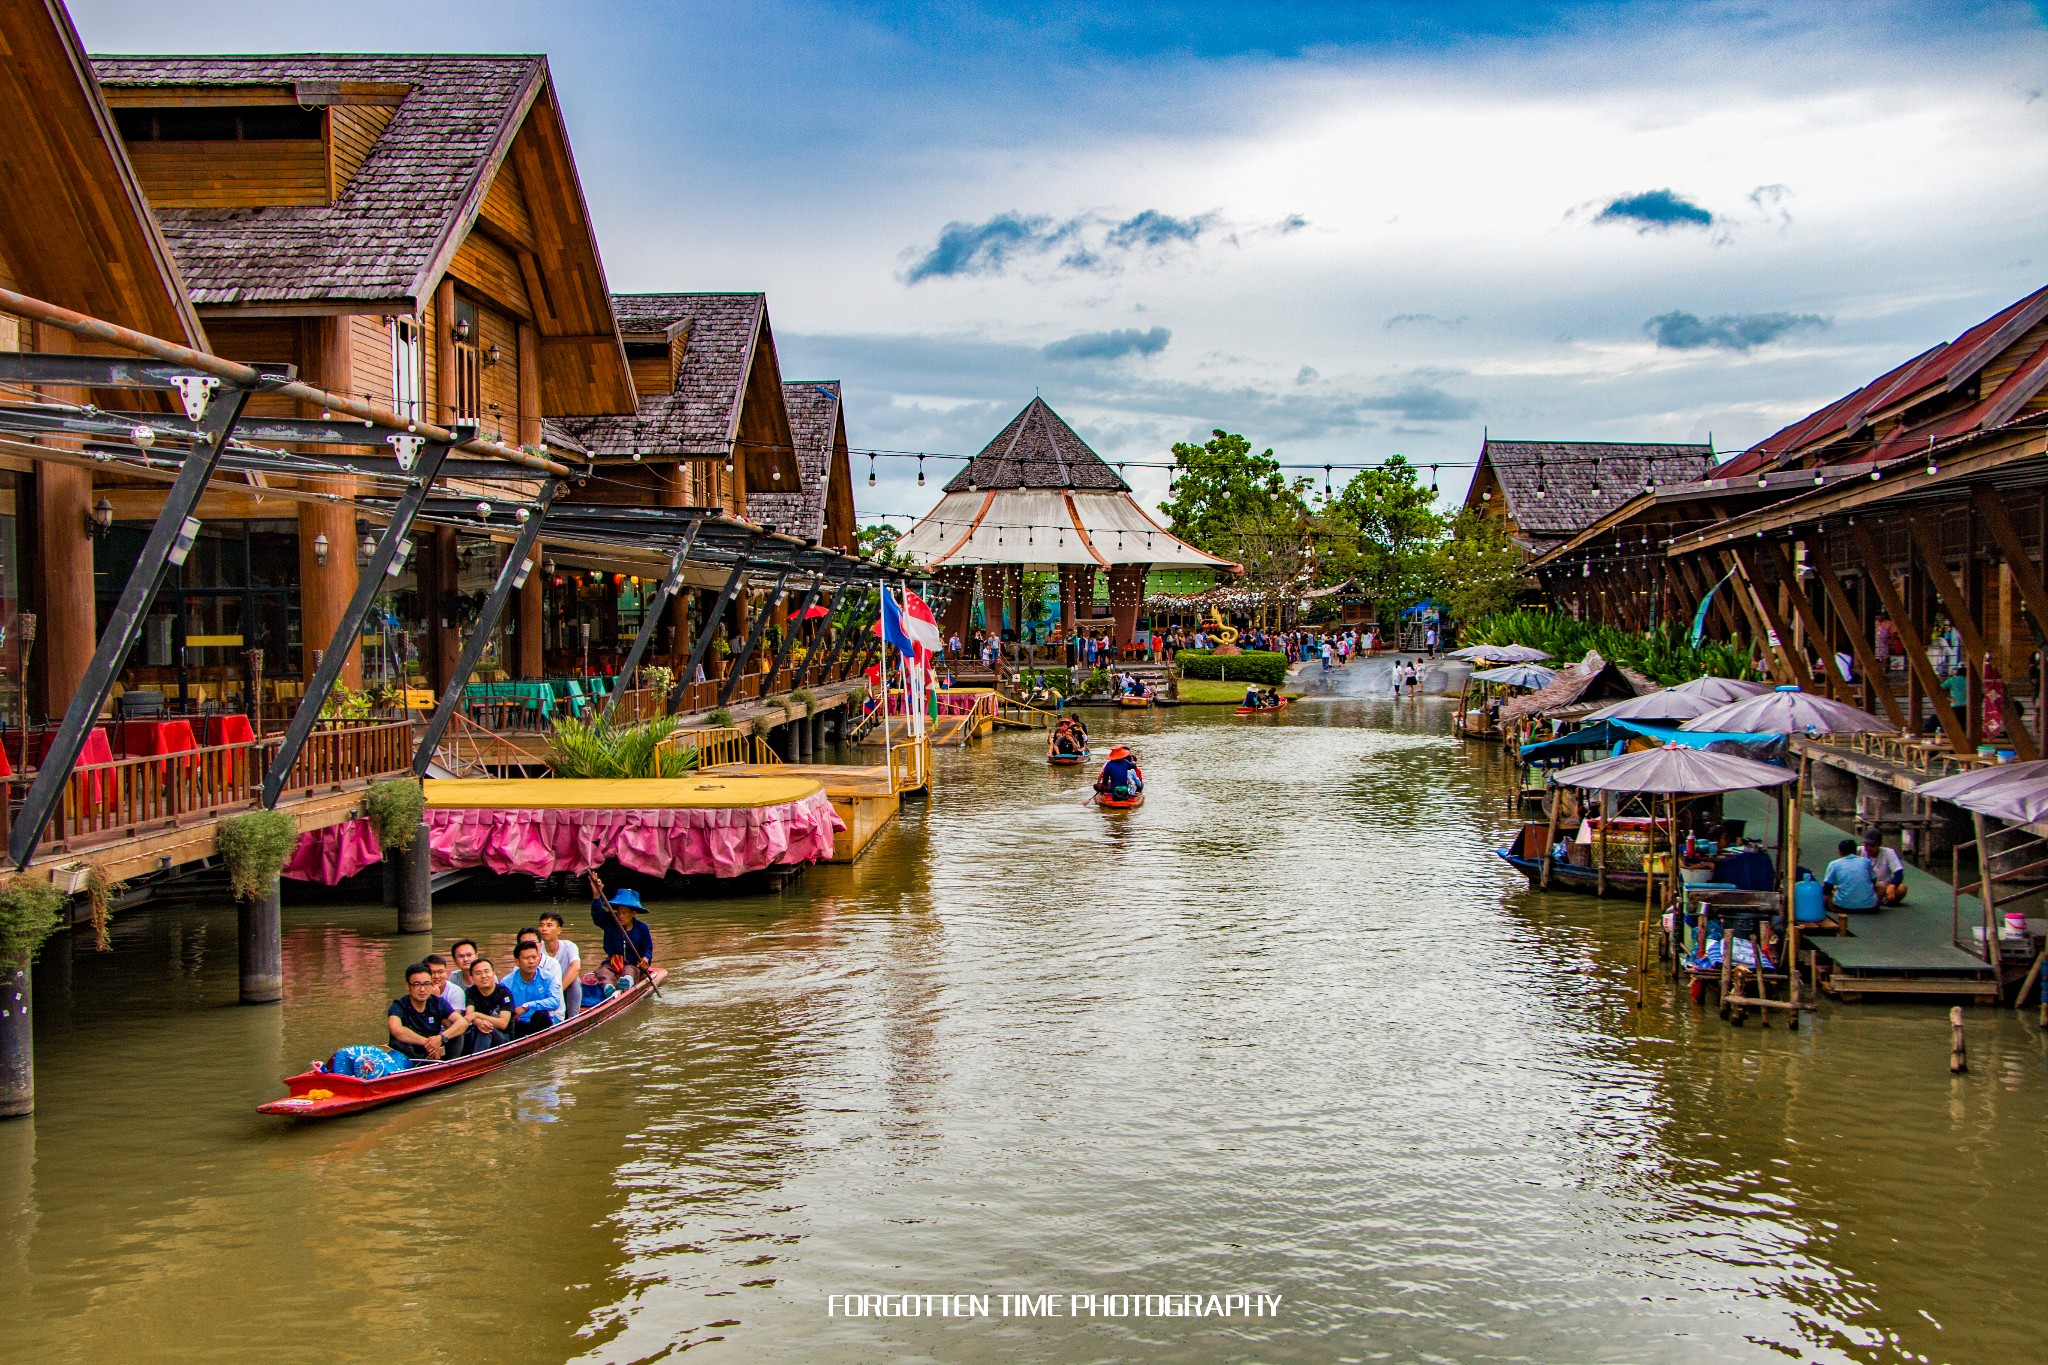 泰国曼谷丹嫩沙多水上市场半日游包马达船1小时-2小时坐船体验水上集市和当地民生（更多套餐可选）,马蜂窝自由行 - 马蜂窝自由行